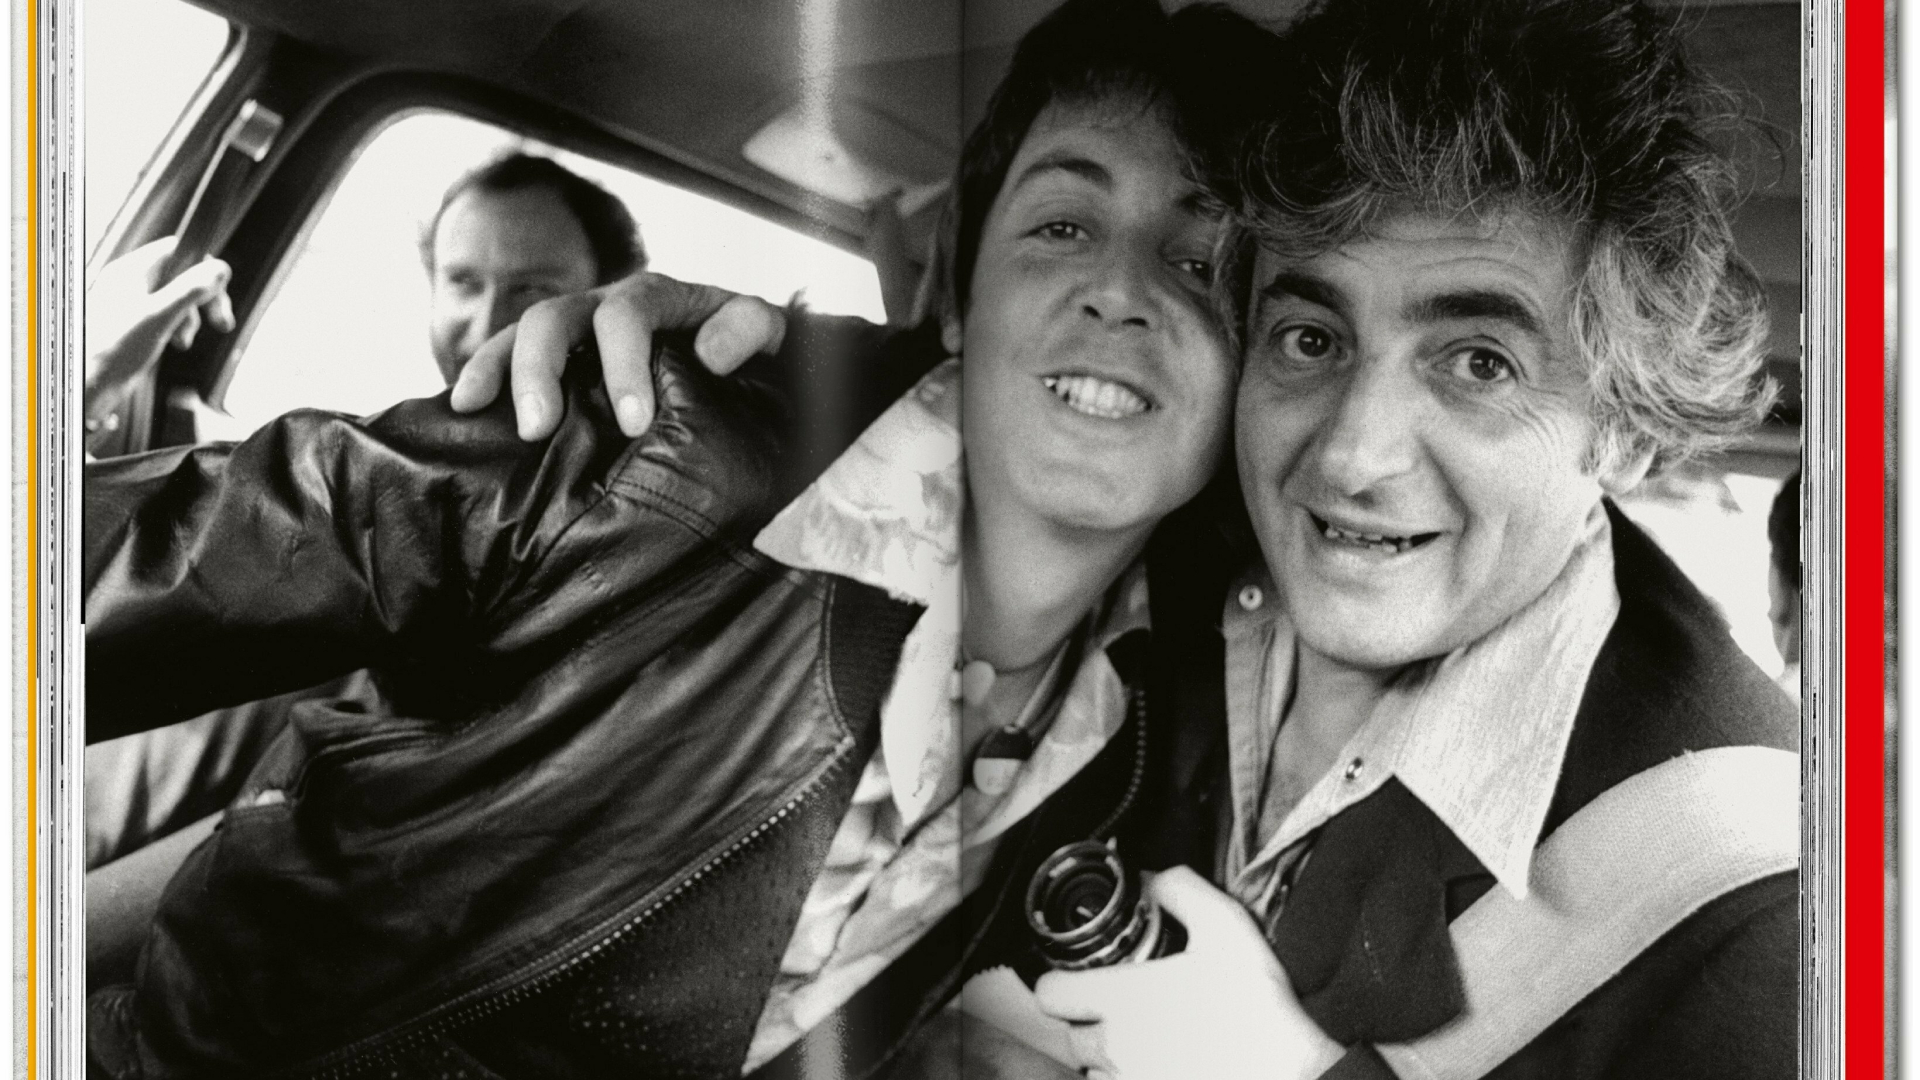 Zum 80.Geburtstag Paul McCartneys erscheint der Bildband "PAUL" von Harry Benson (Foto:Taschen)